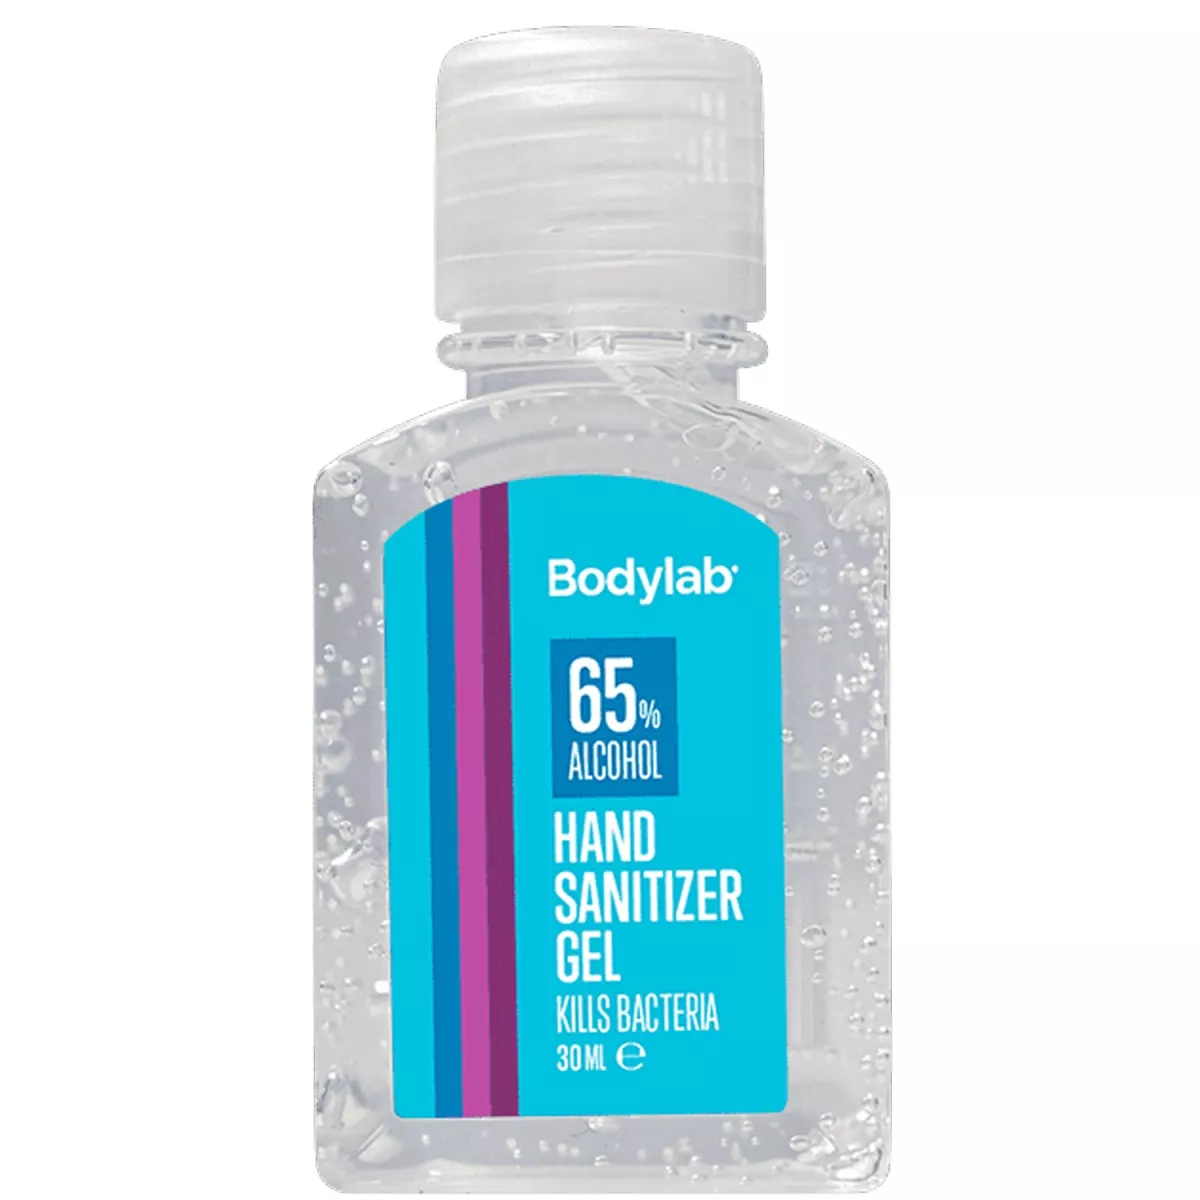 #1 - Bodylab Hand Sanitizer Gel Håndsprit 30ml